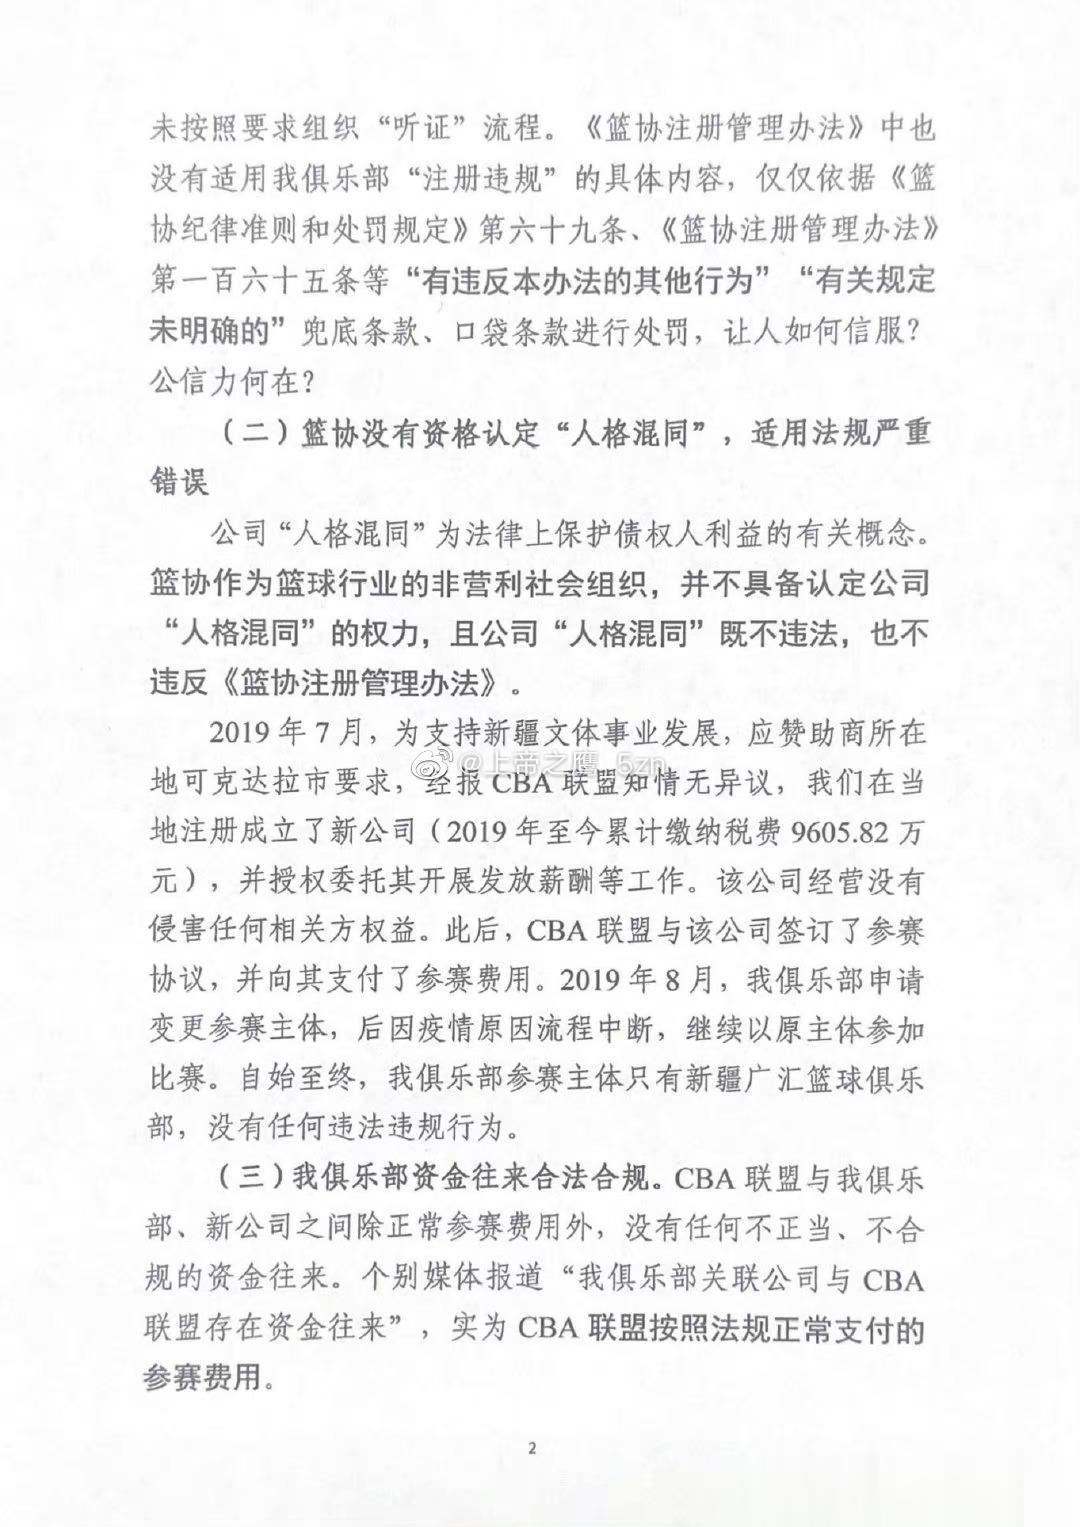  新疆广汇俱乐部深夜发表声明，怒喷篮协的处罚“严重错误、无理荒诞”，并宣布退出C(2)